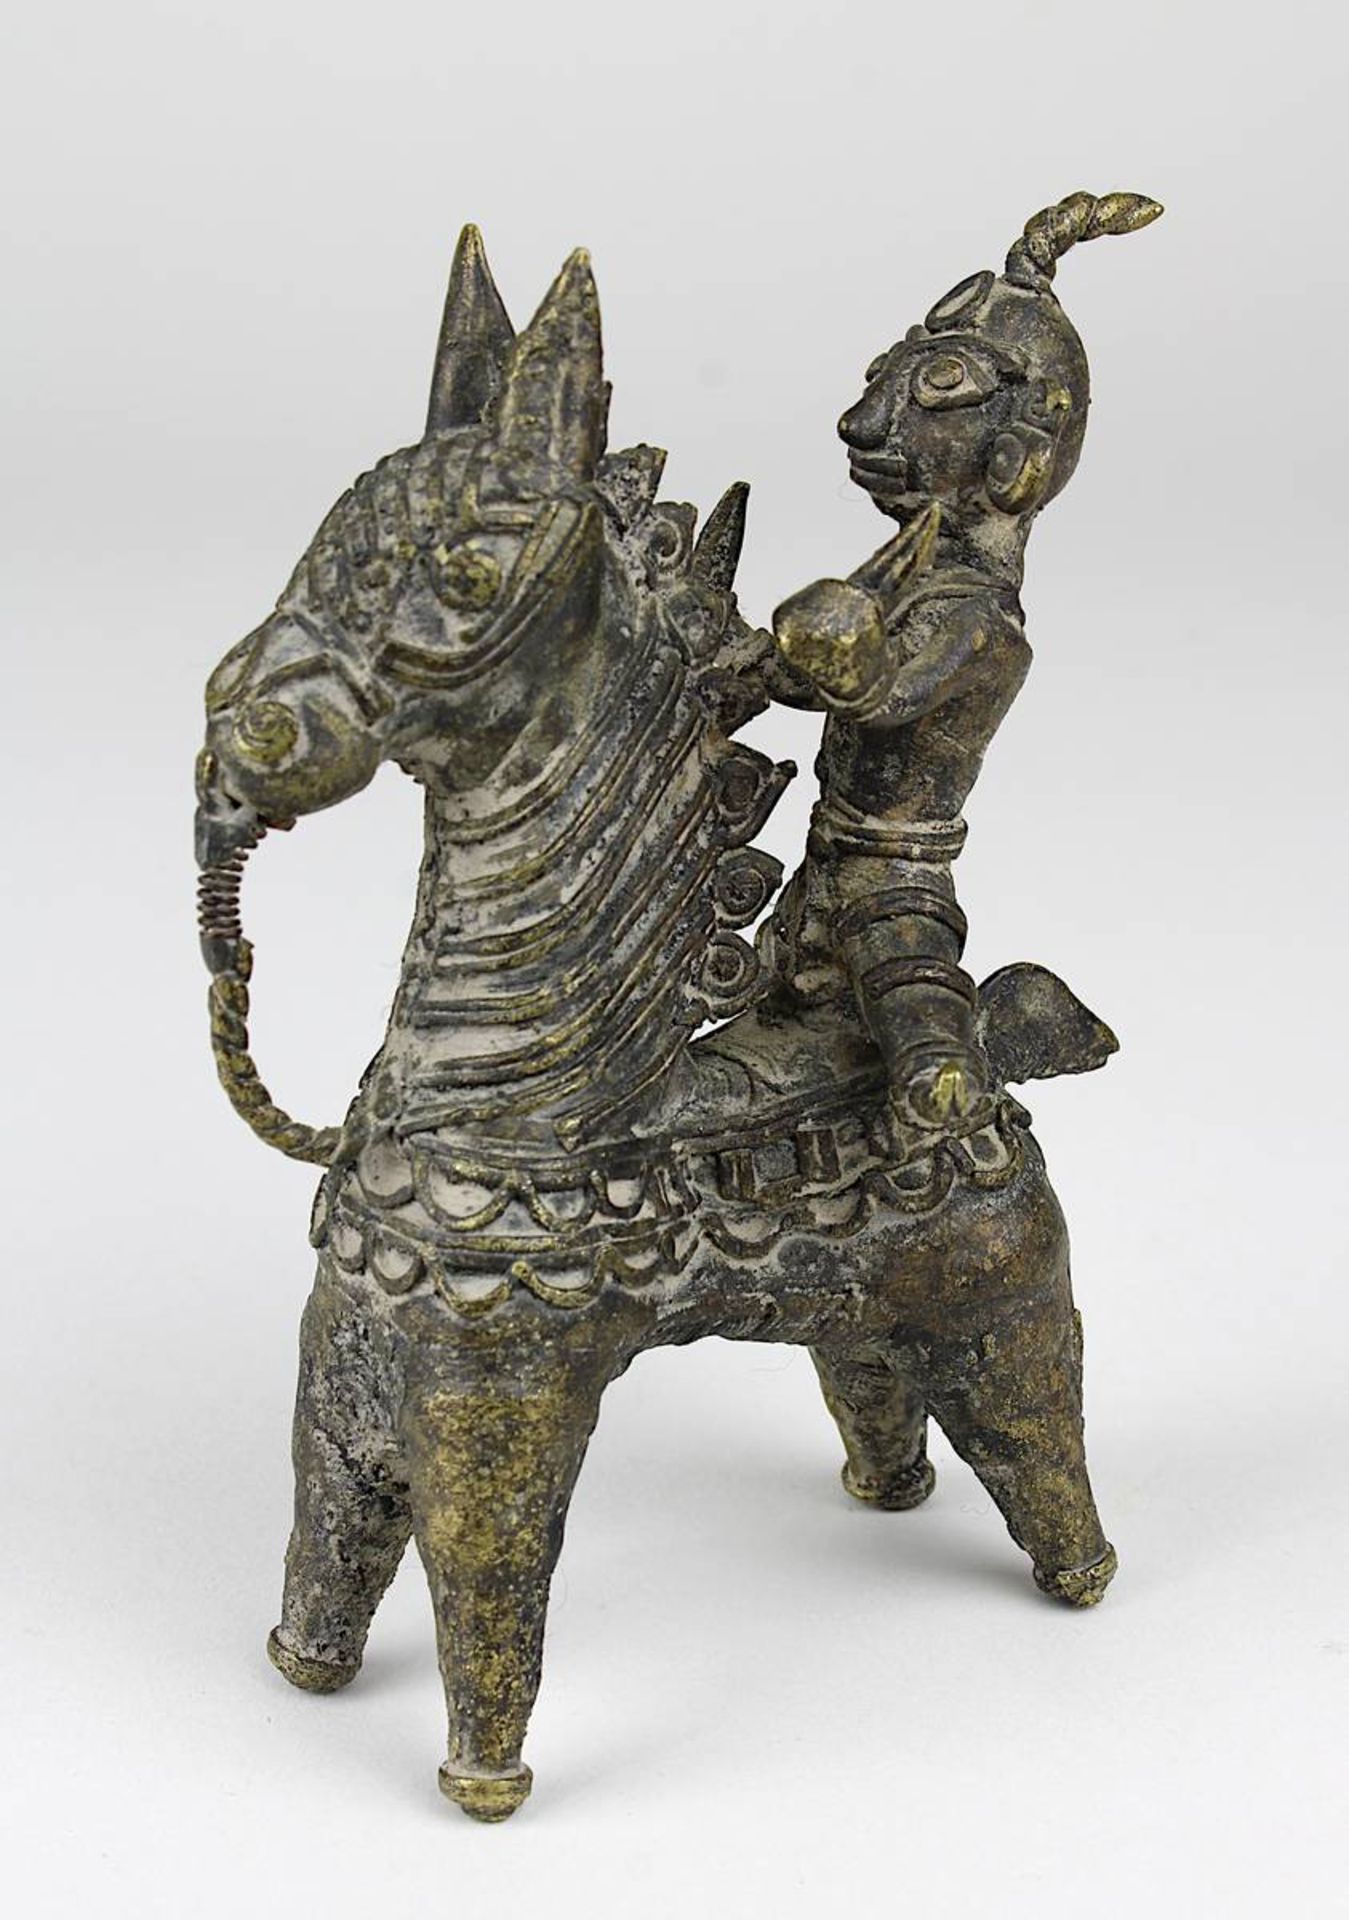 Dhokra-Figur Pferd und Reiter, Indien, wohl Orissa Anfang 20. Jh., Gelbguss in der verlorenen Form